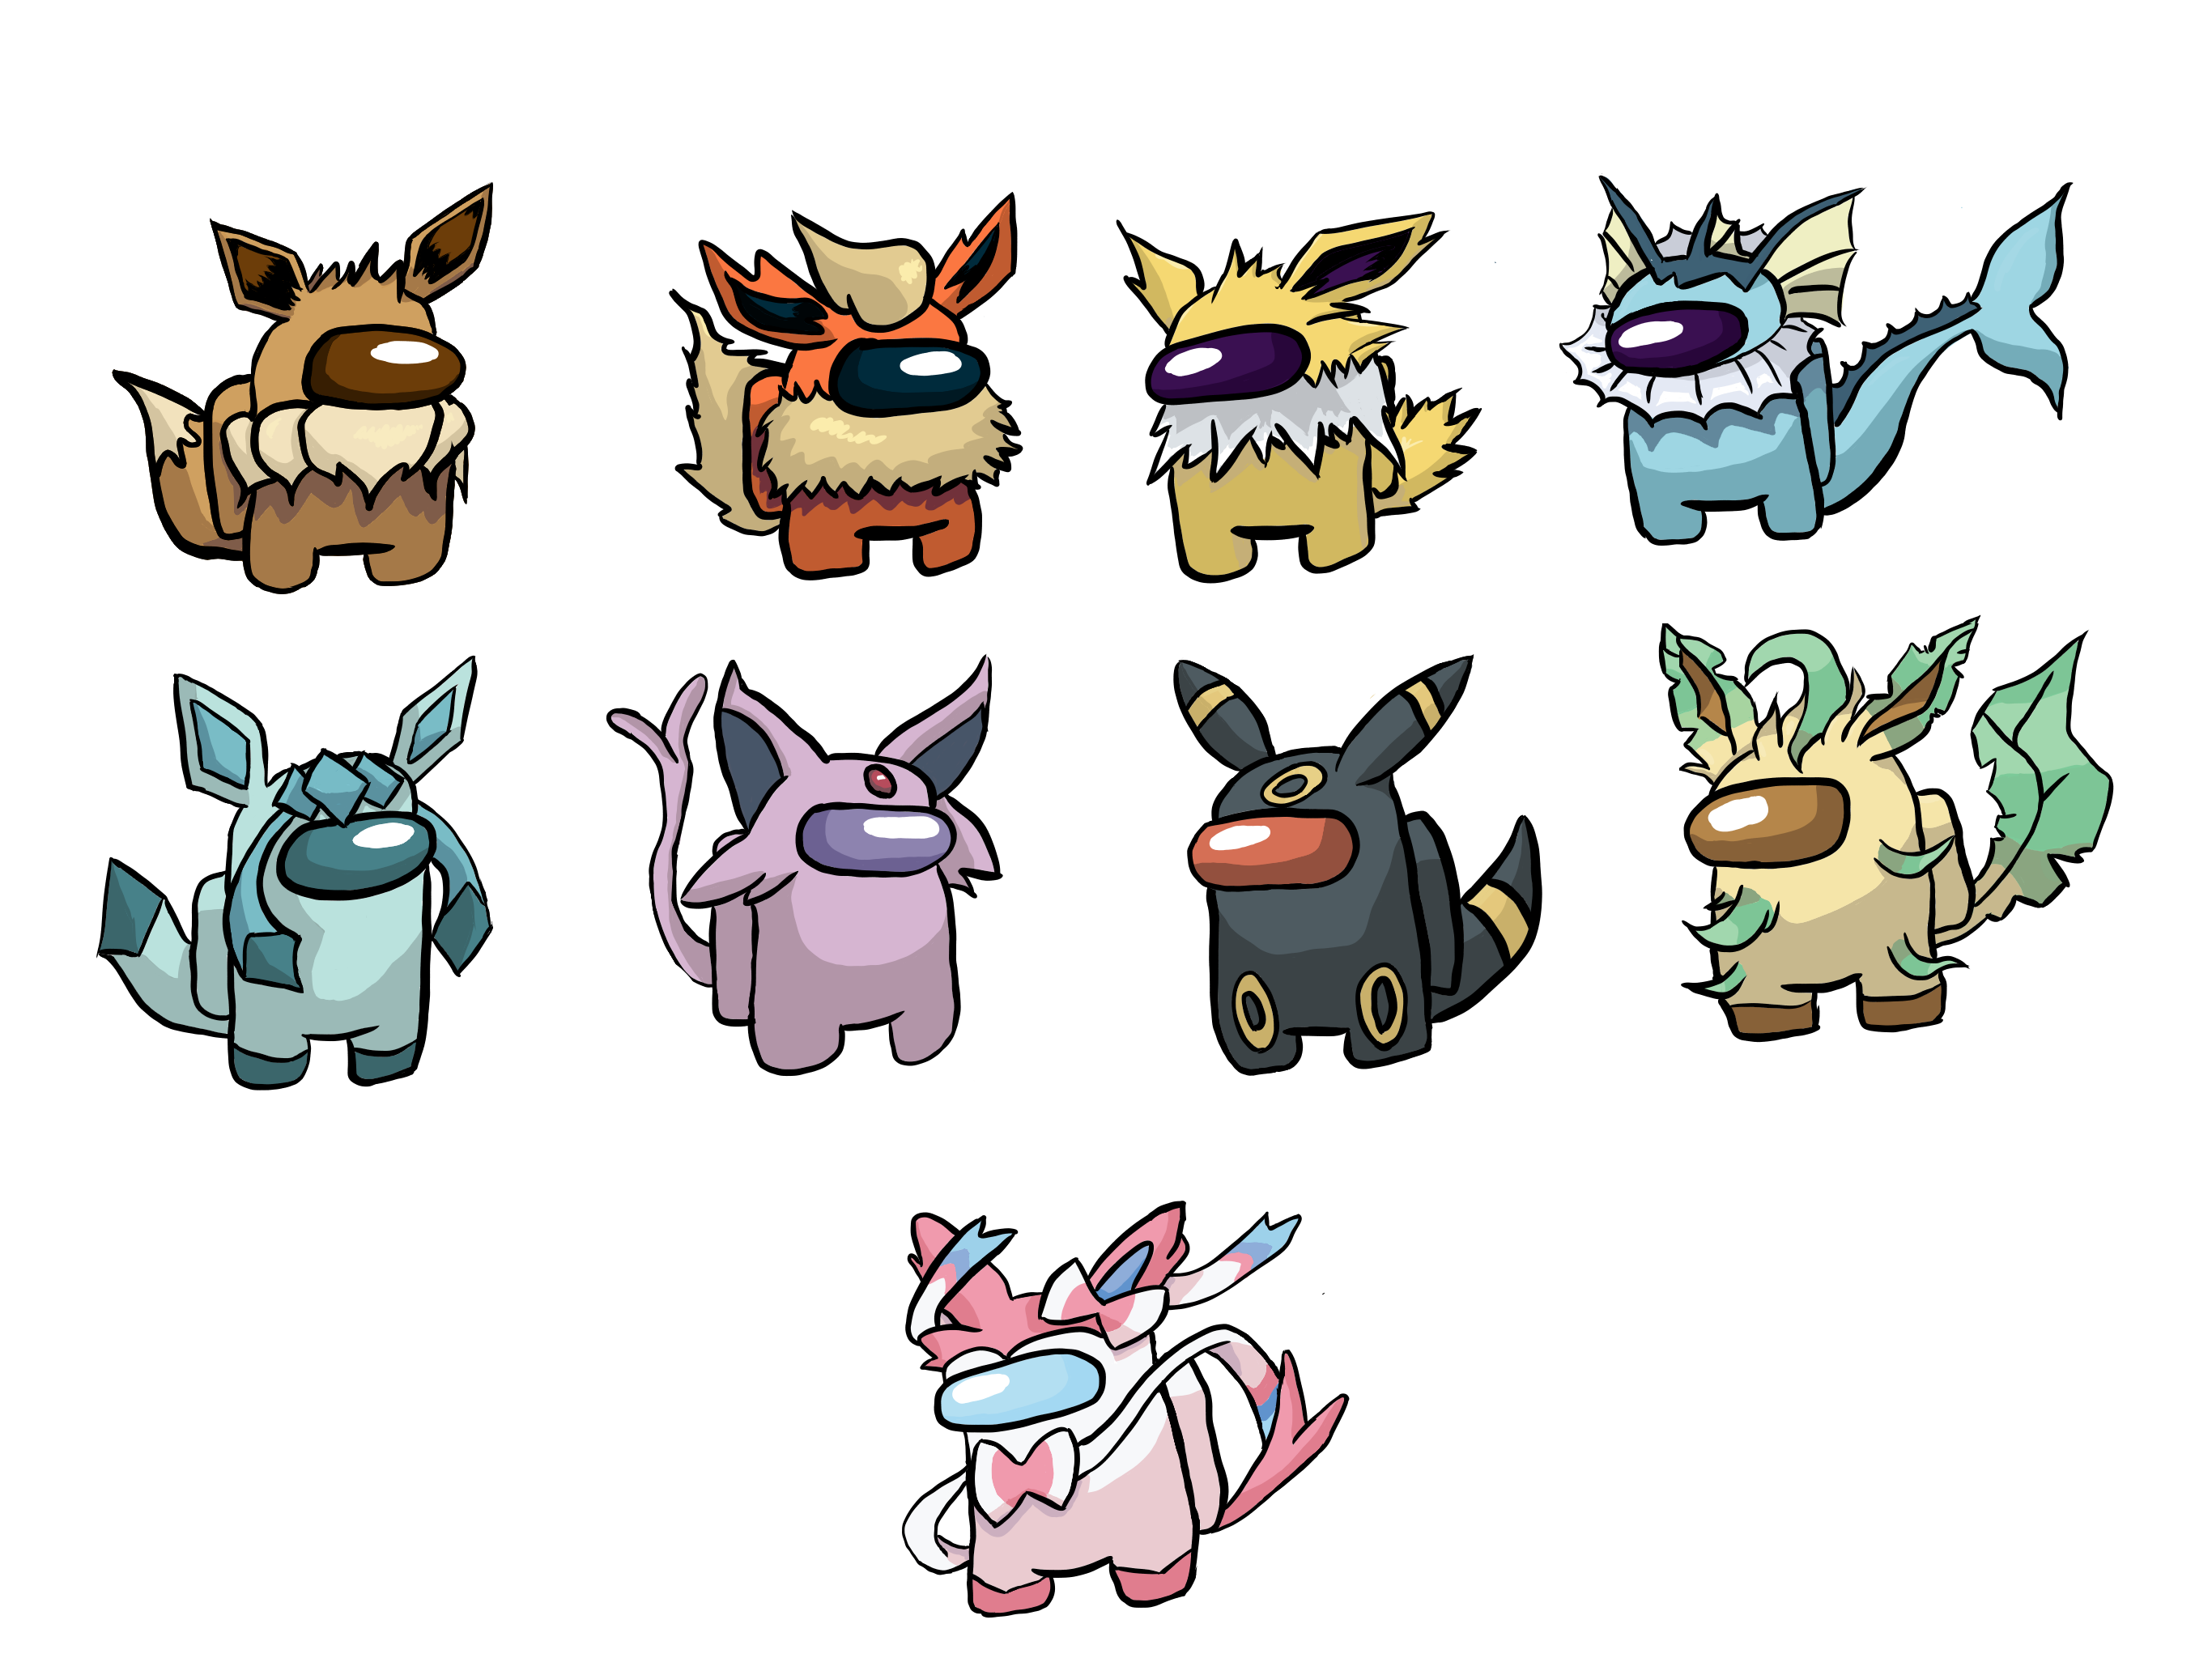 How To Get Each Of Eevee's Evolutions In Pokémon Go - AmongMen